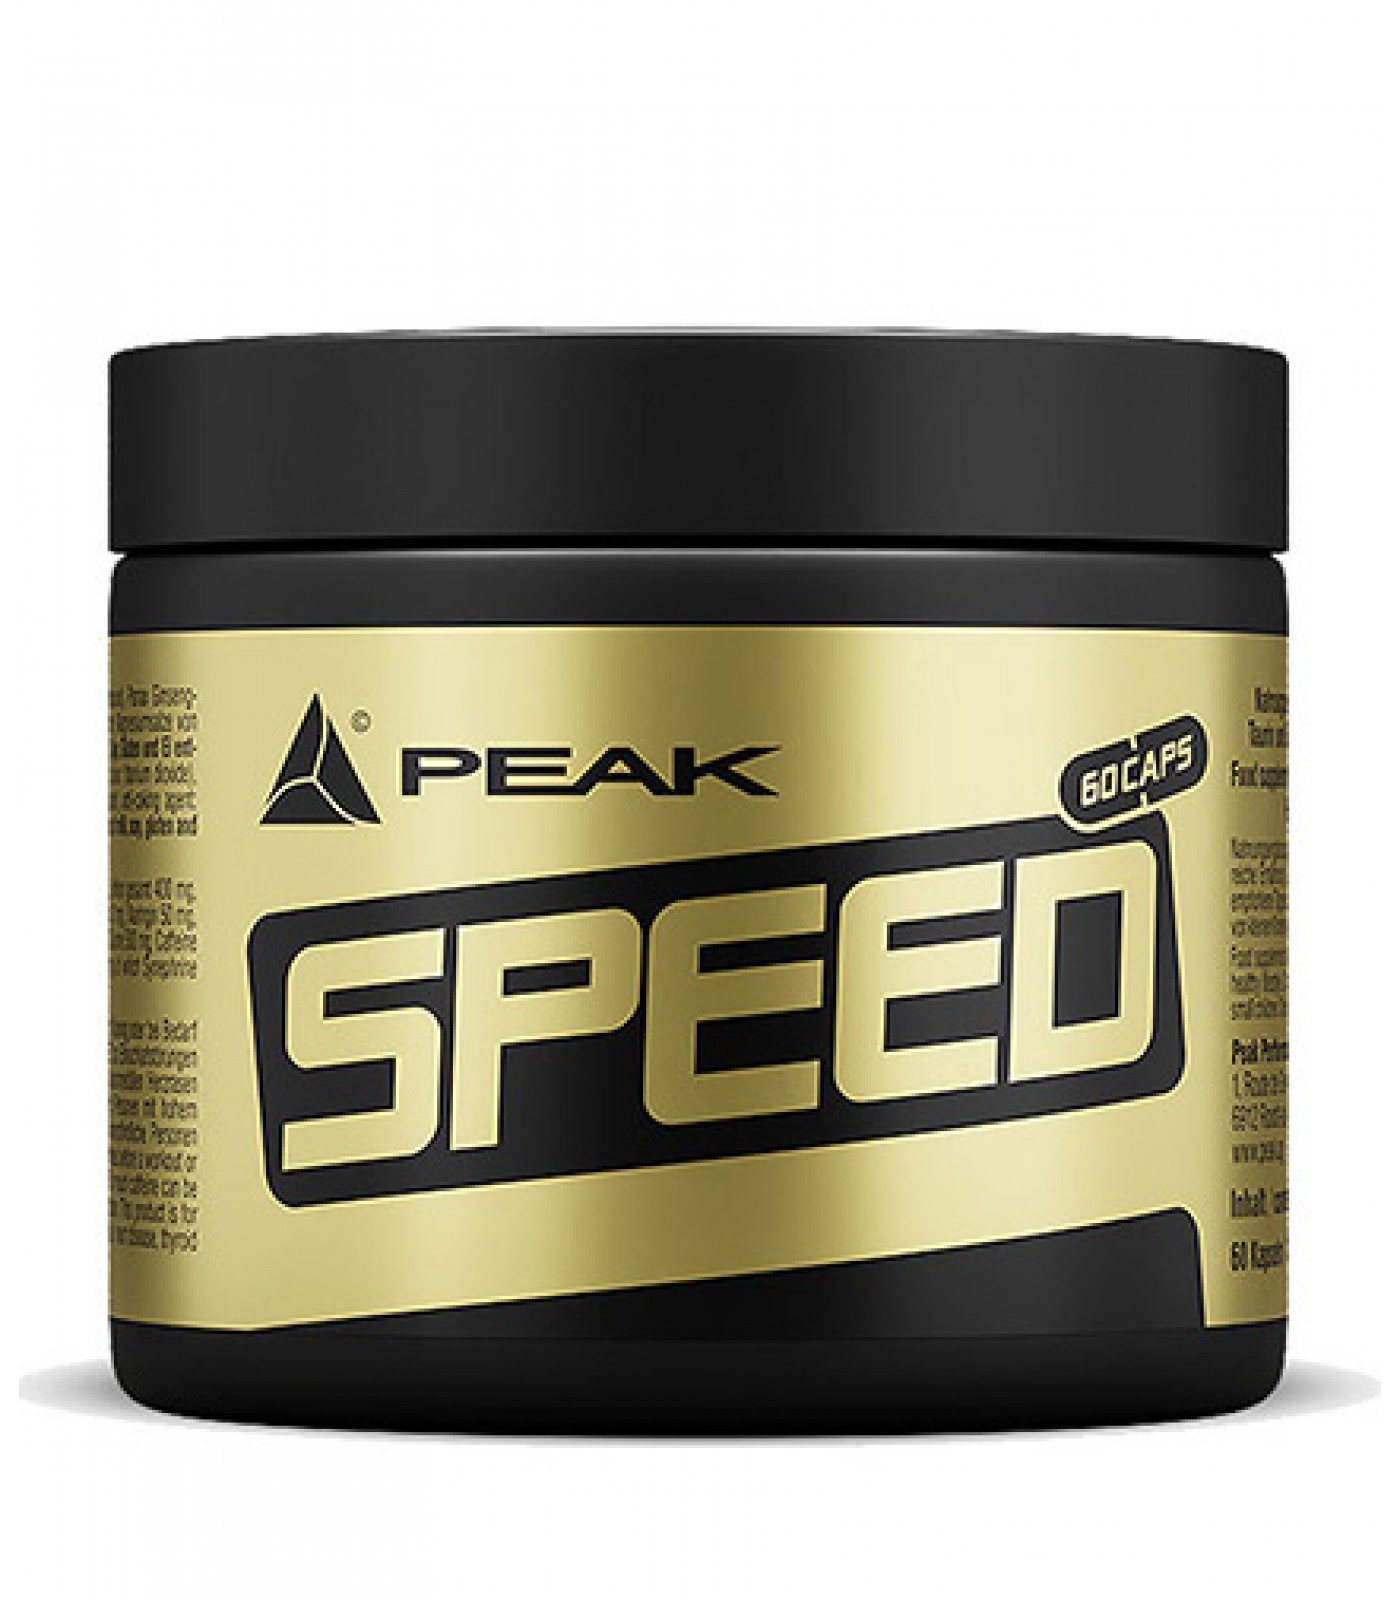 Peak - Speed / 60 caps